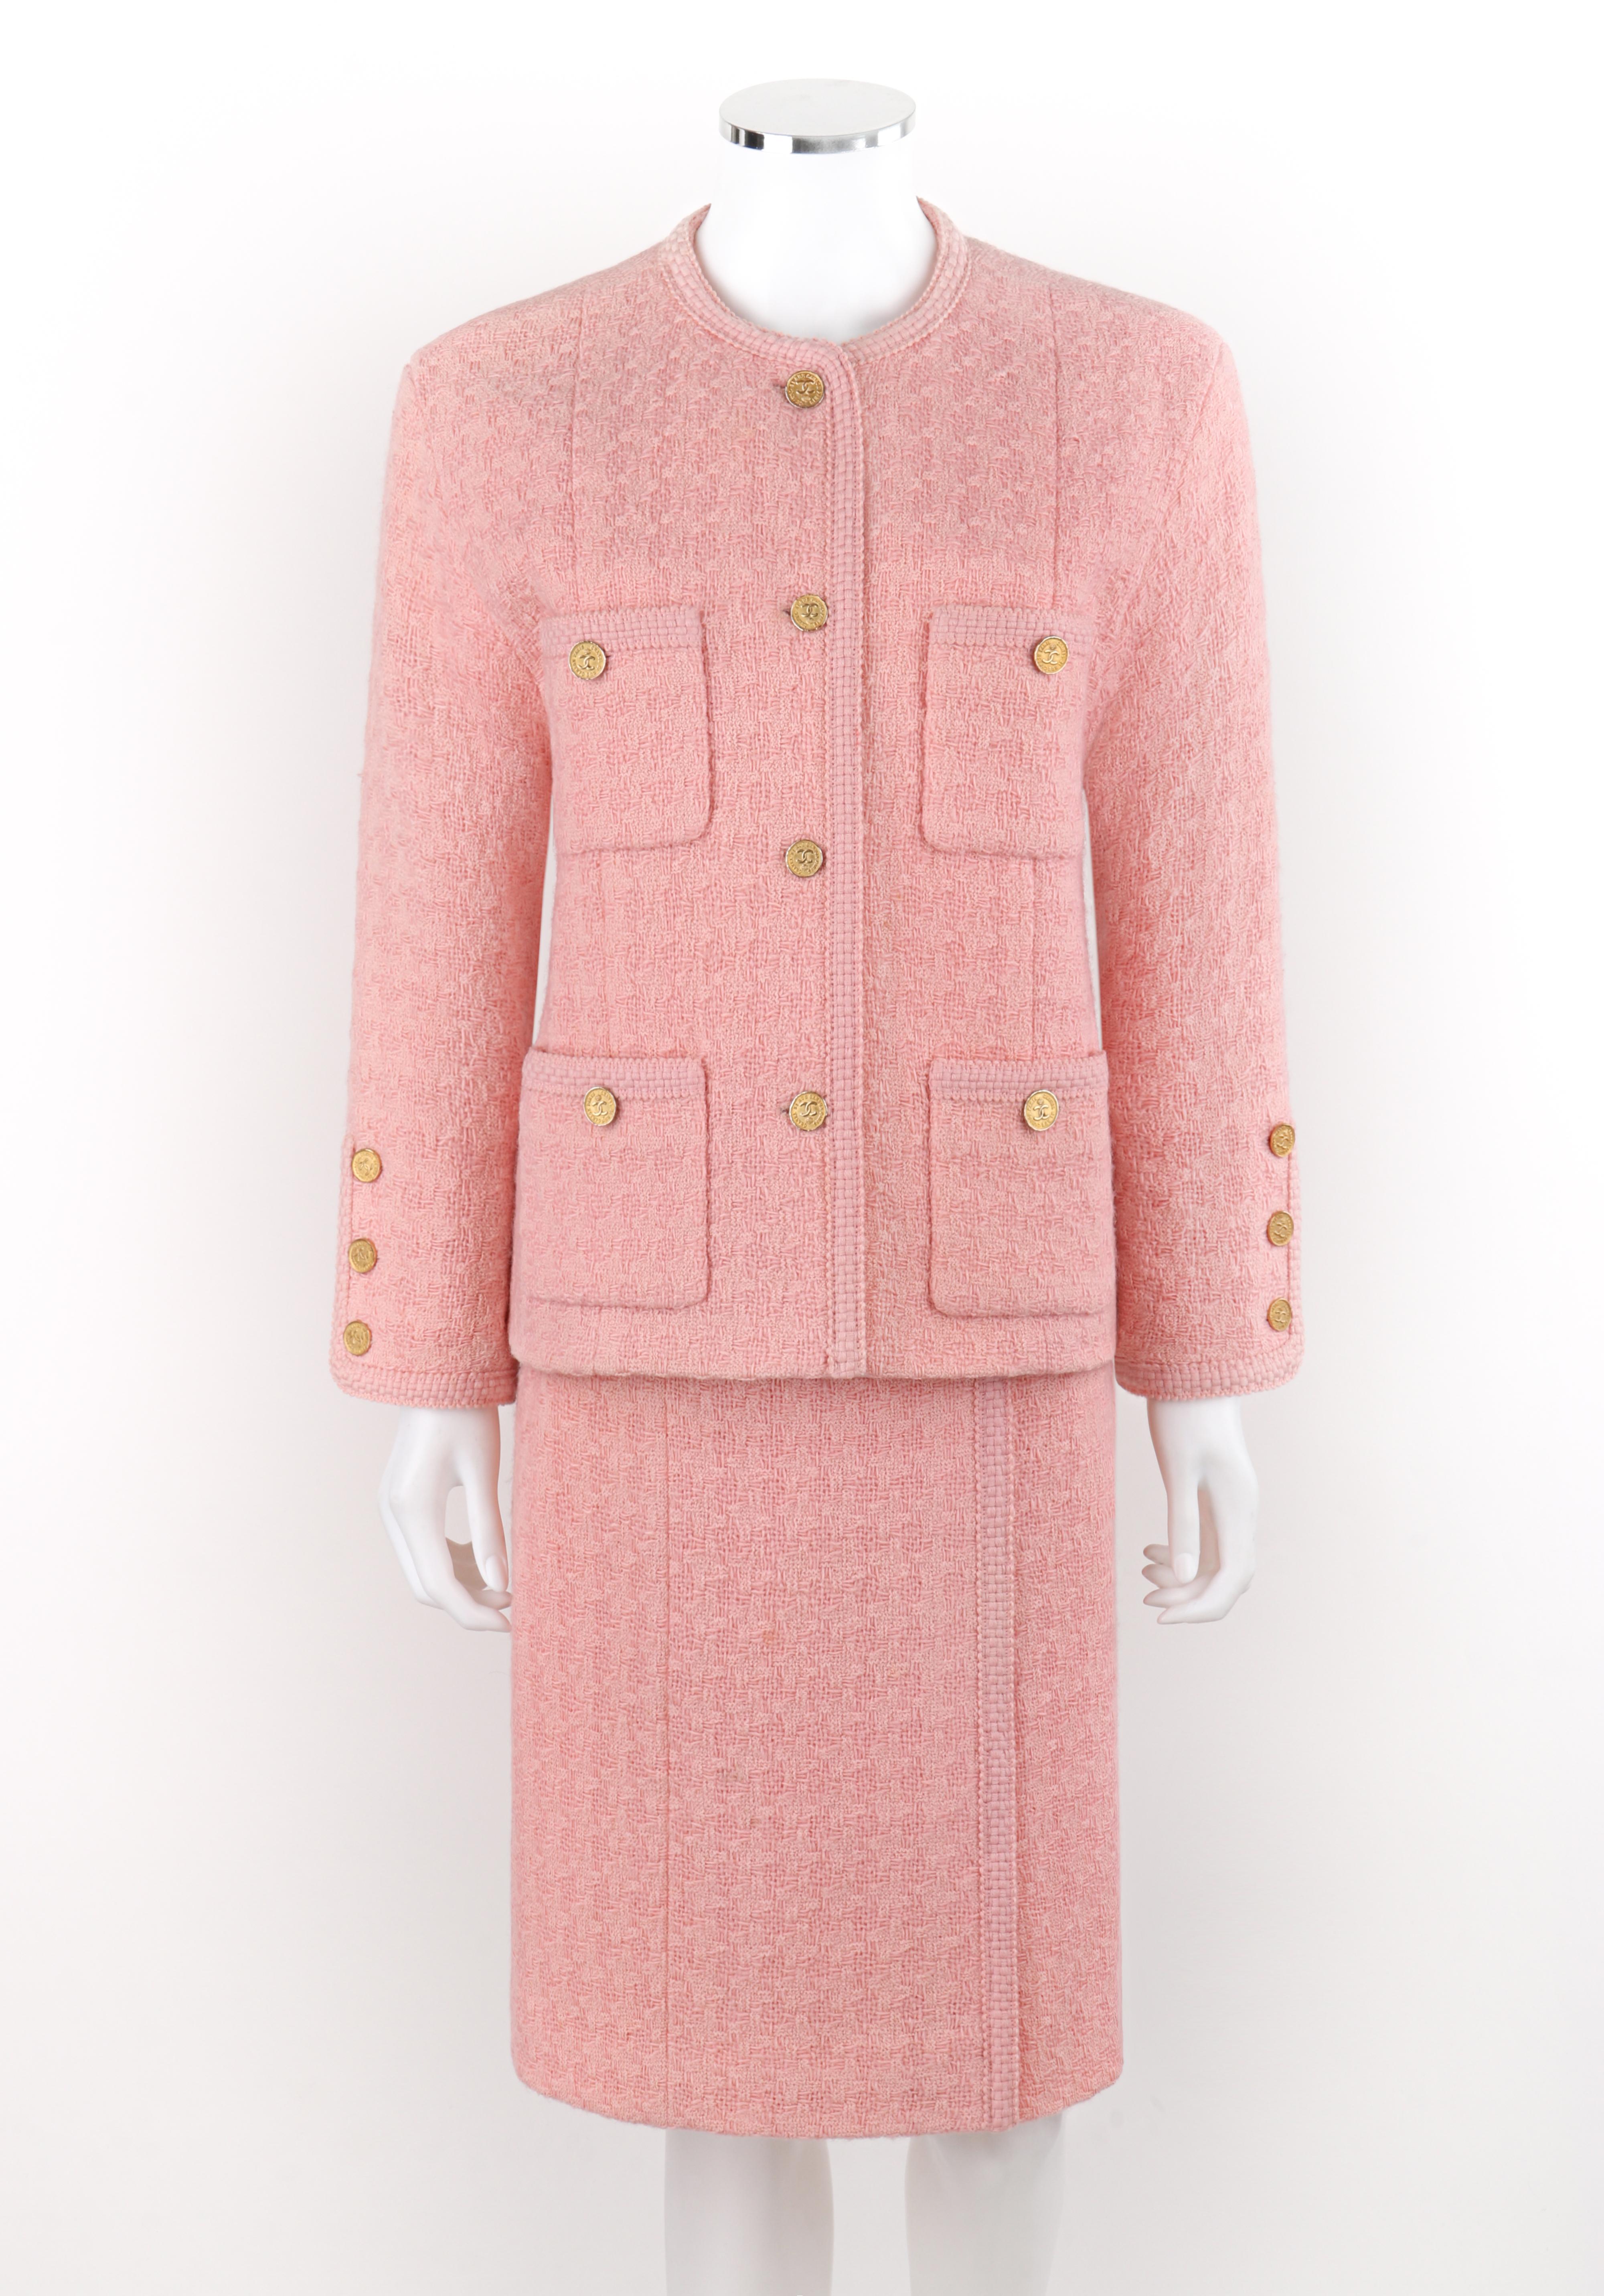 CHANEL c.1980's 2pc Pink Gold Button-Up Tweed Woven Trim Trim Jacket Skirt Suit Set

Marque / Fabricant : Chanel
Circa : 1980's
Designer : Karl Lagerfeld
Style : Ensemble veste jupe tailleur
Couleur(s) : Nuances de rose, or
Doublée : Oui 
Non marqué